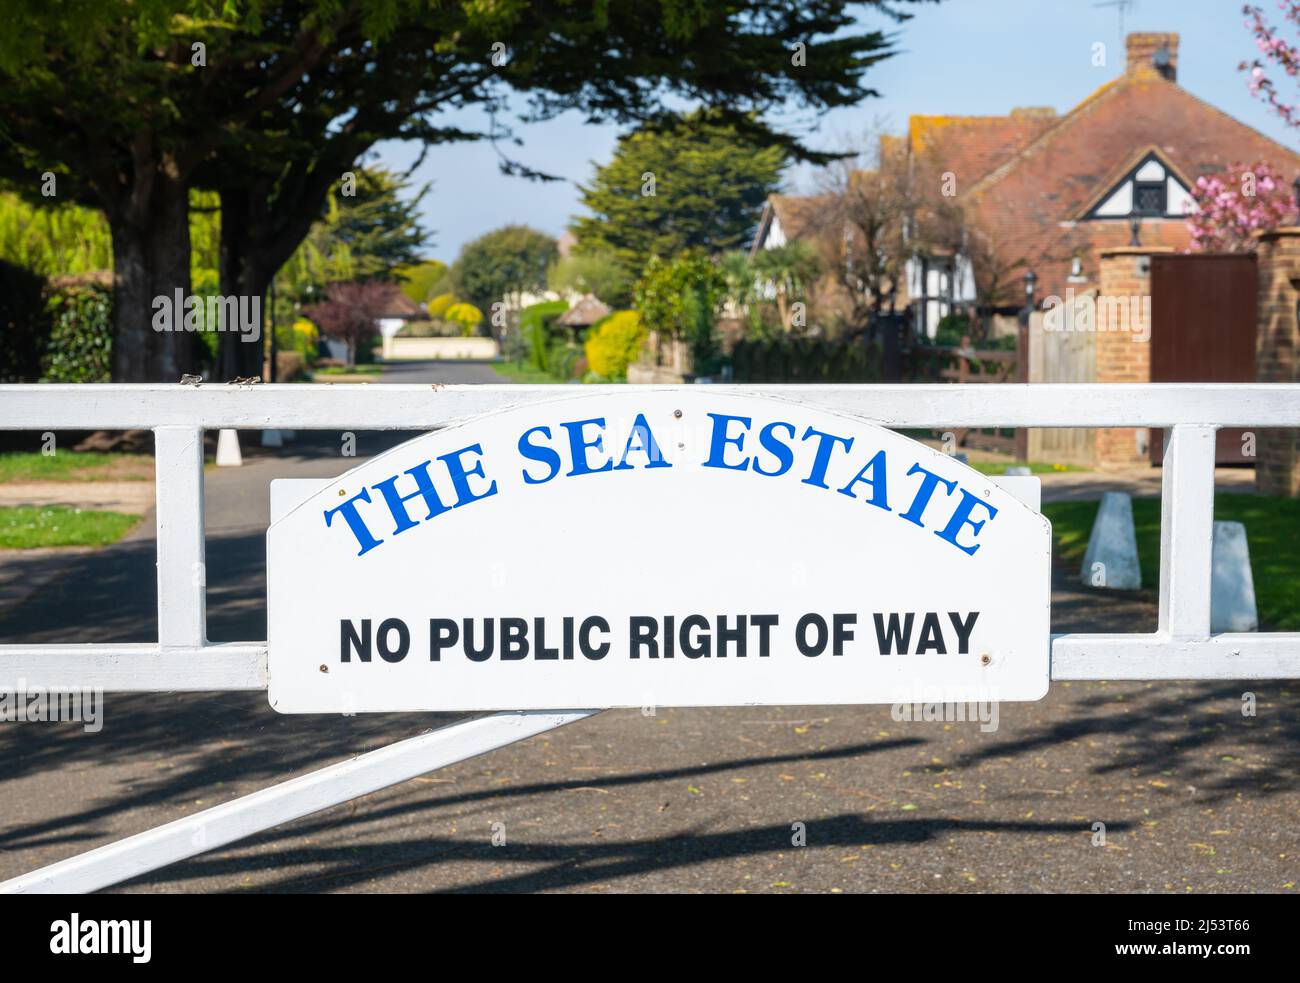 Cartello e cancello all'ingresso del Sea Estate, una proprietà privata senza diritto pubblico di strada a Rustington, West Sussex, Inghilterra, Regno Unito. Foto Stock